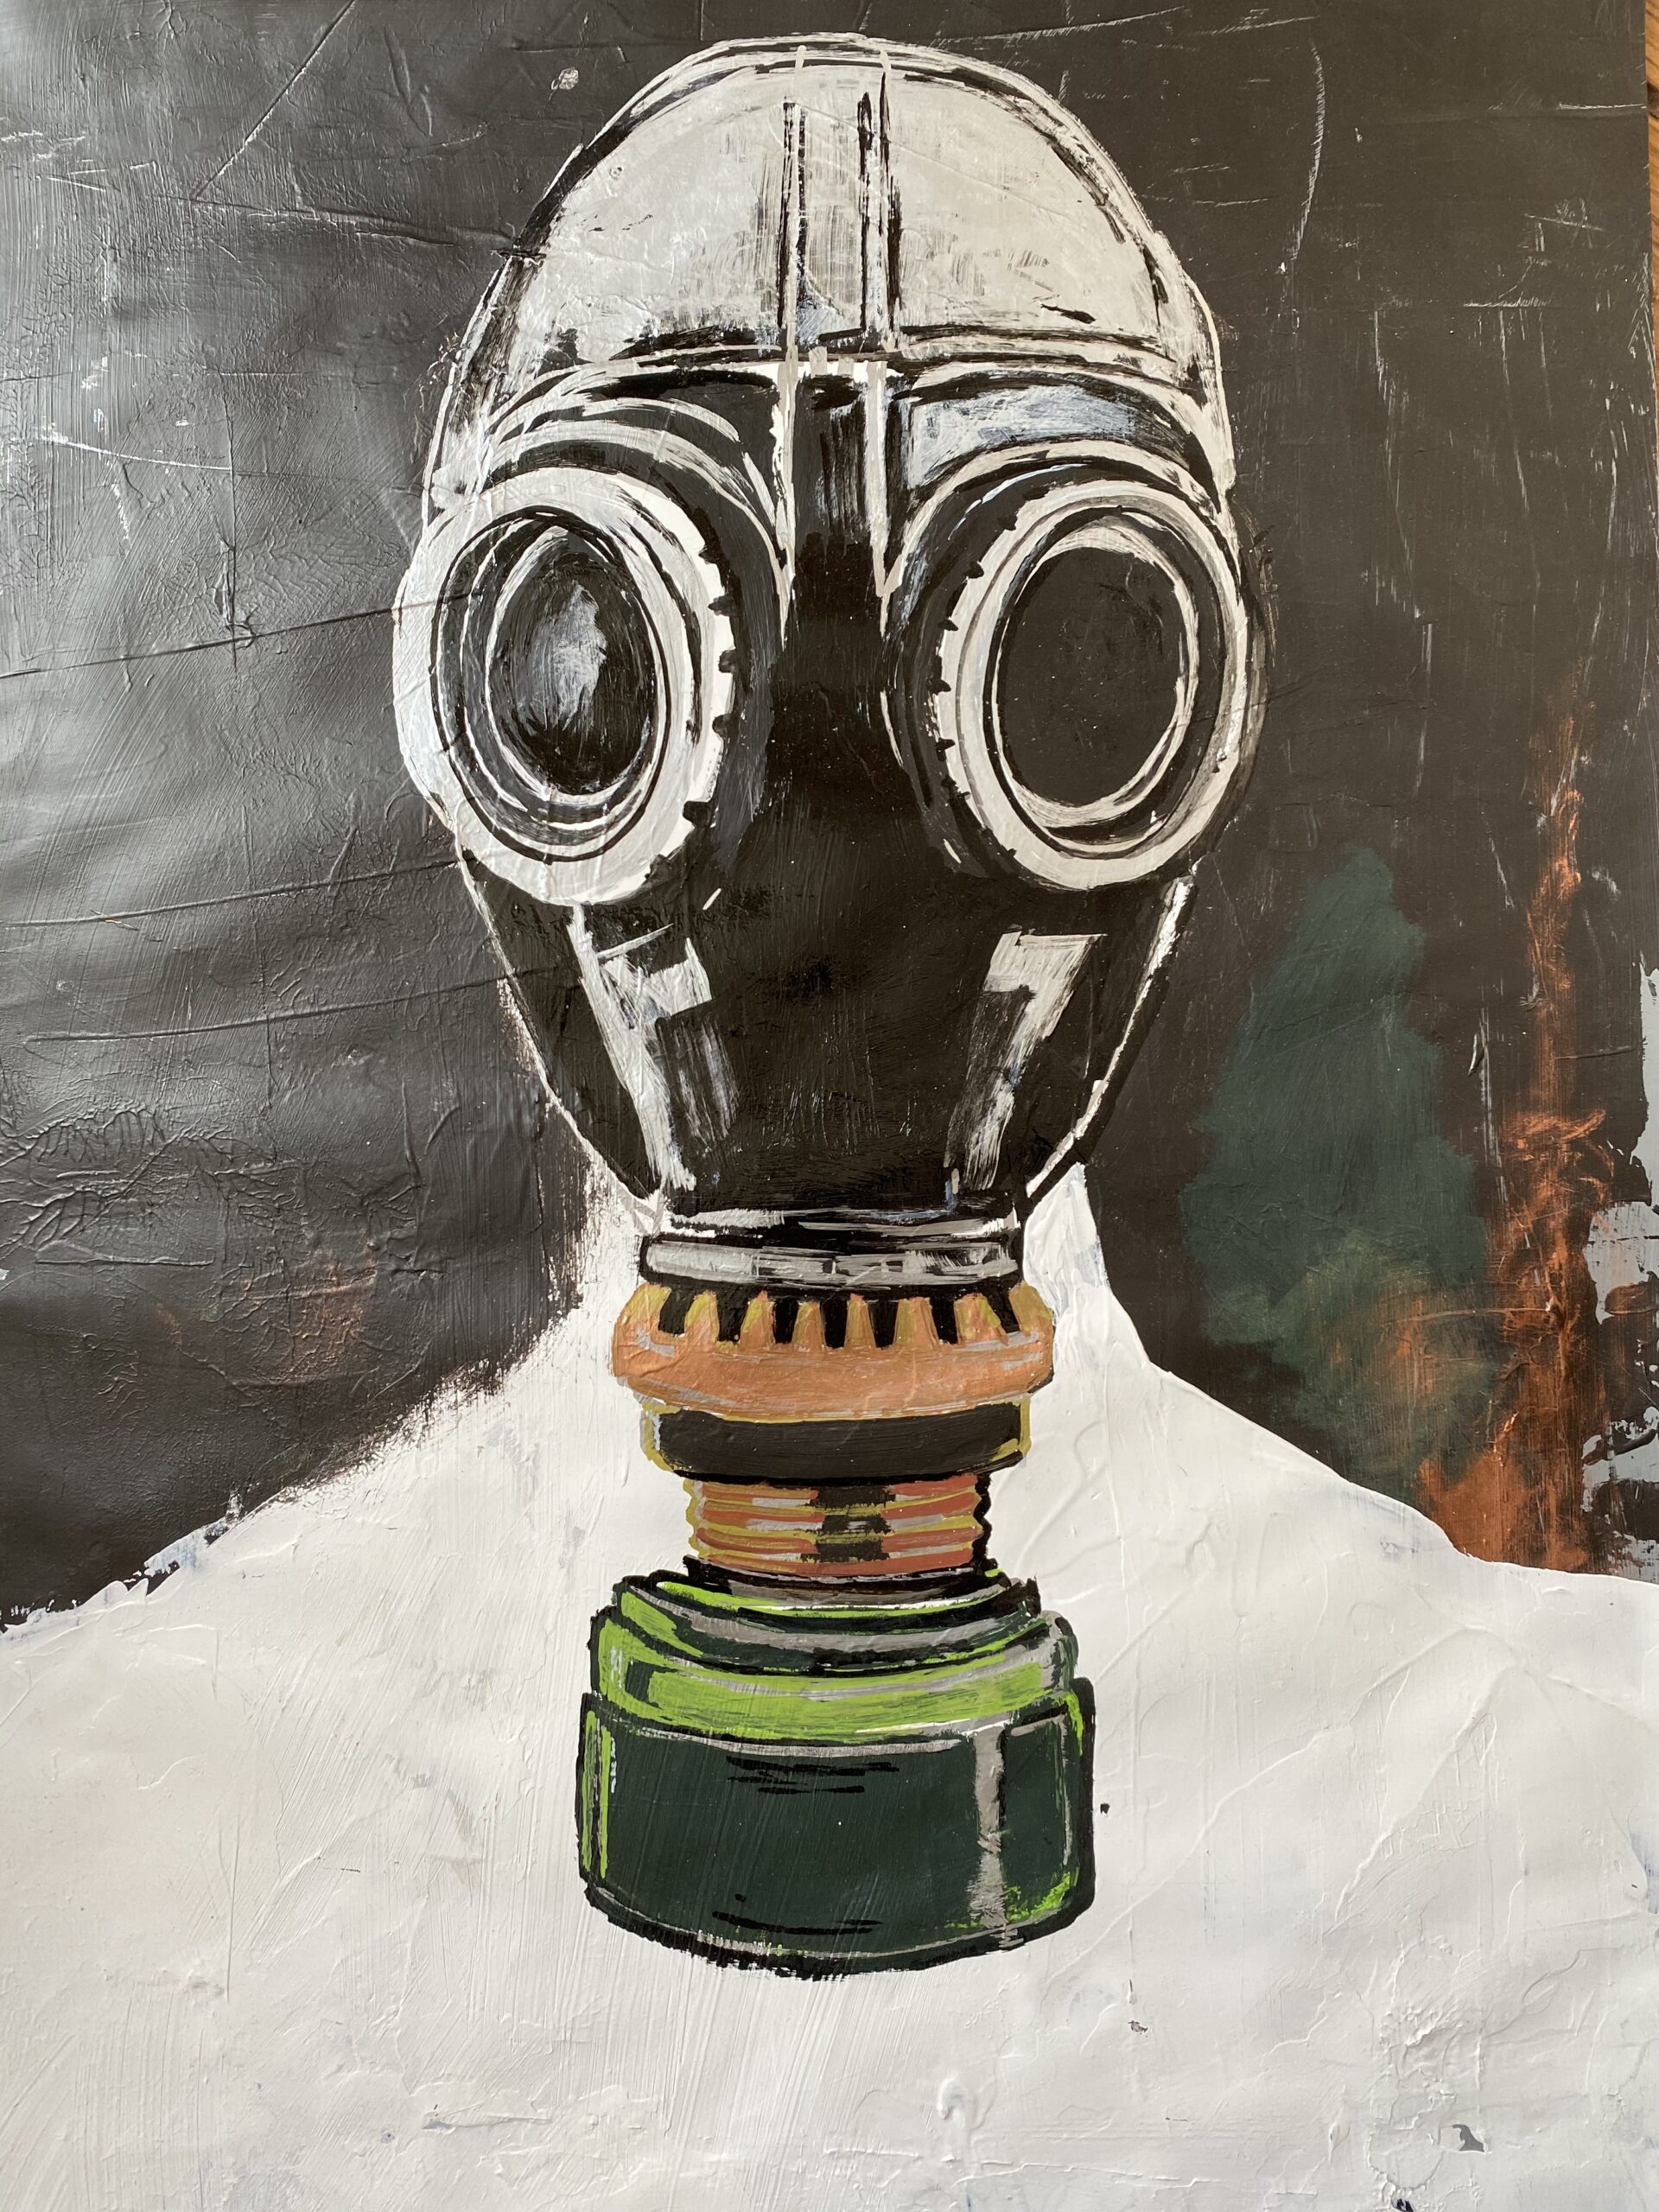 Pintura de um rosto humano com mascara de gas